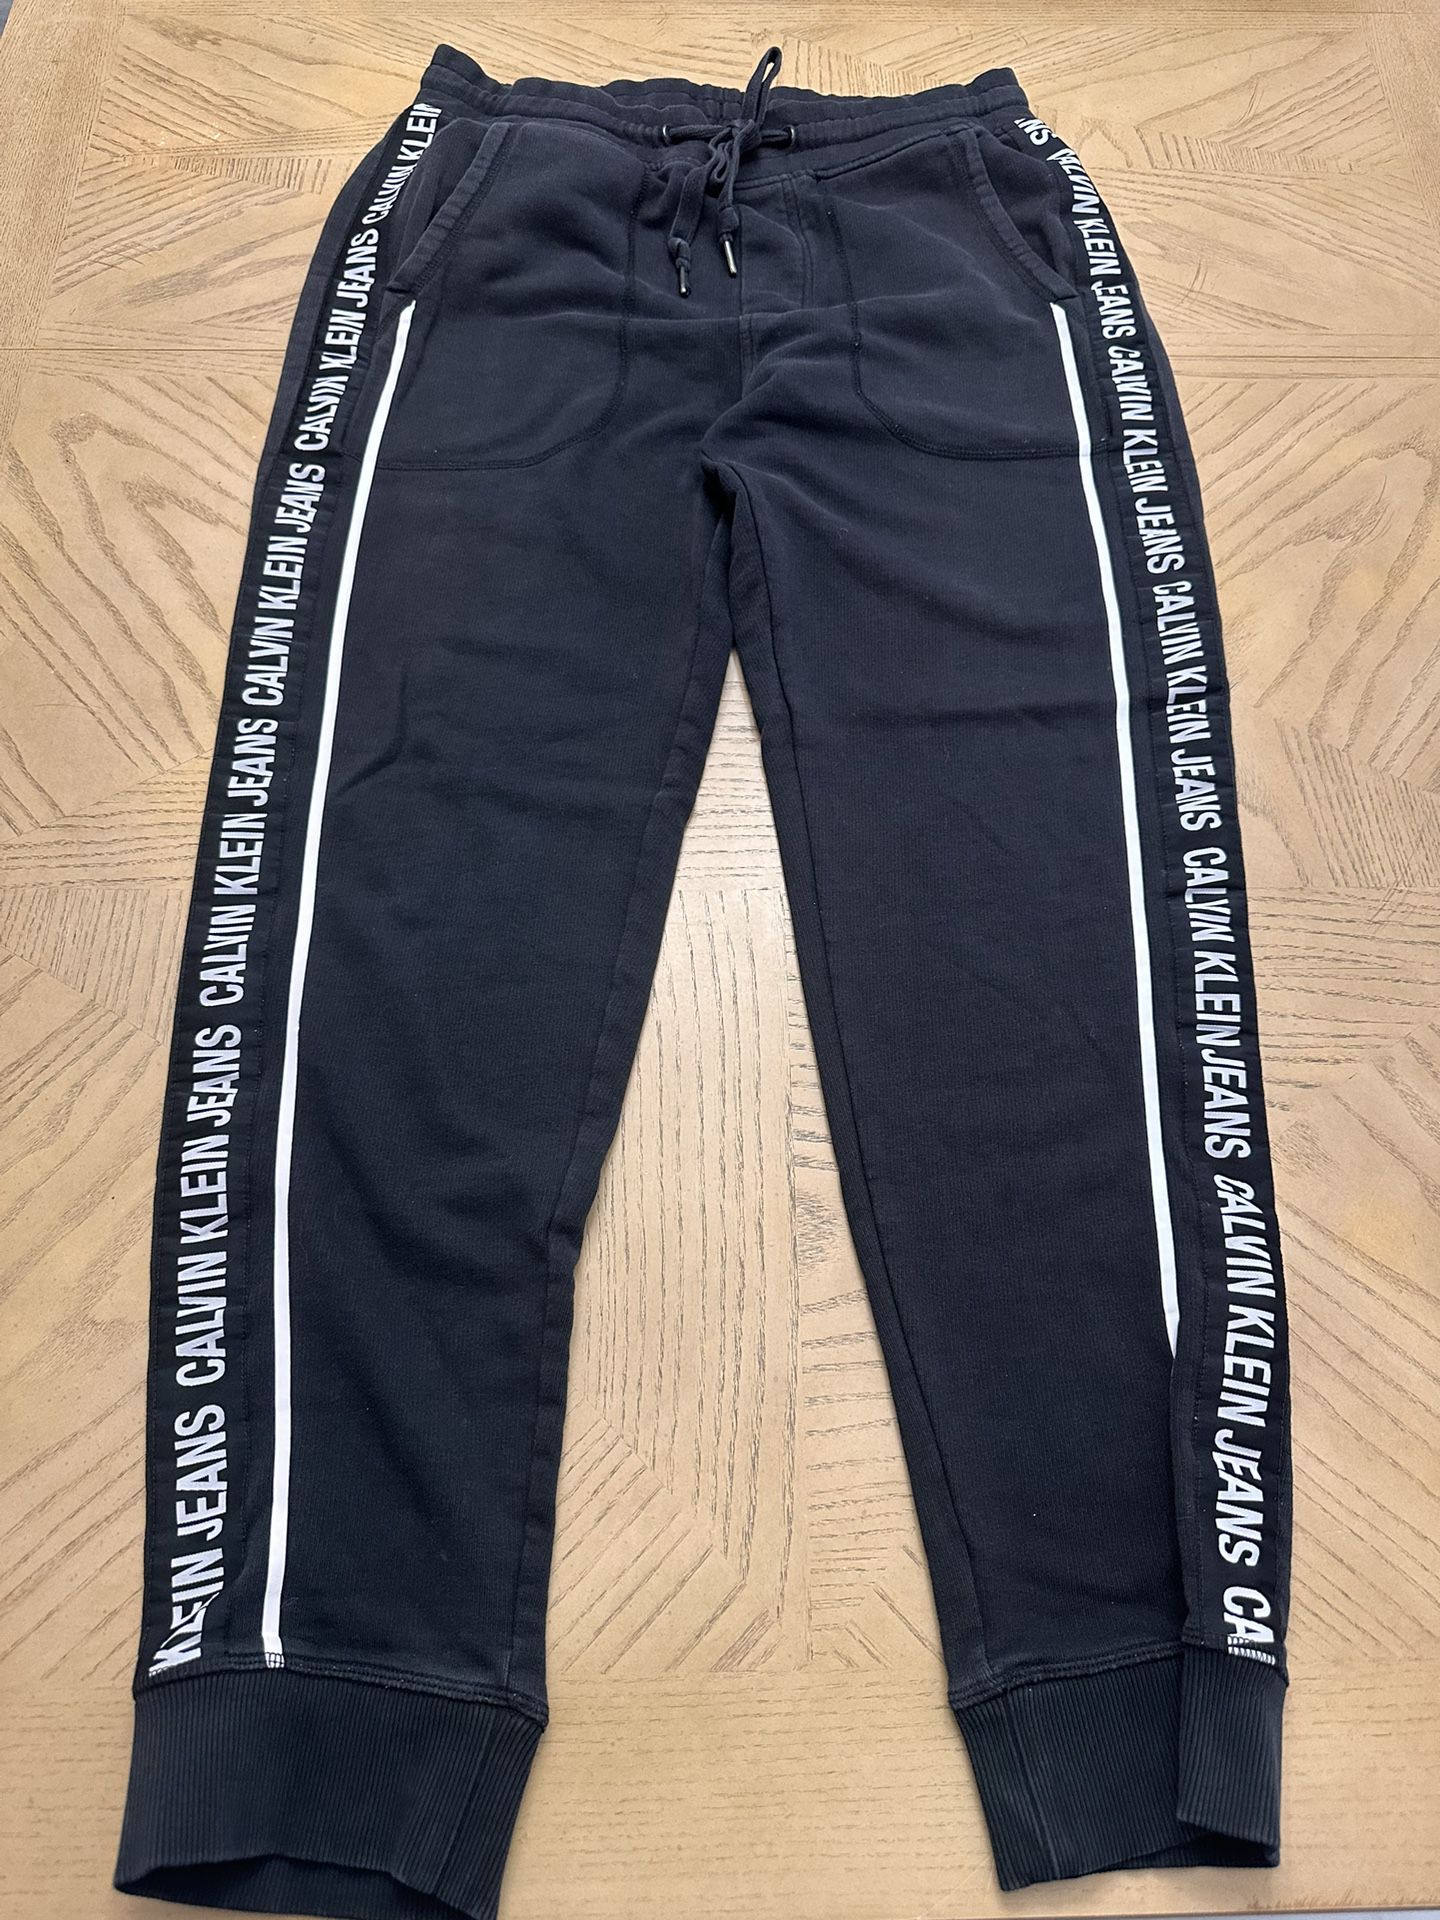 Calvin Klein black sweatpants/Joggers Size large 